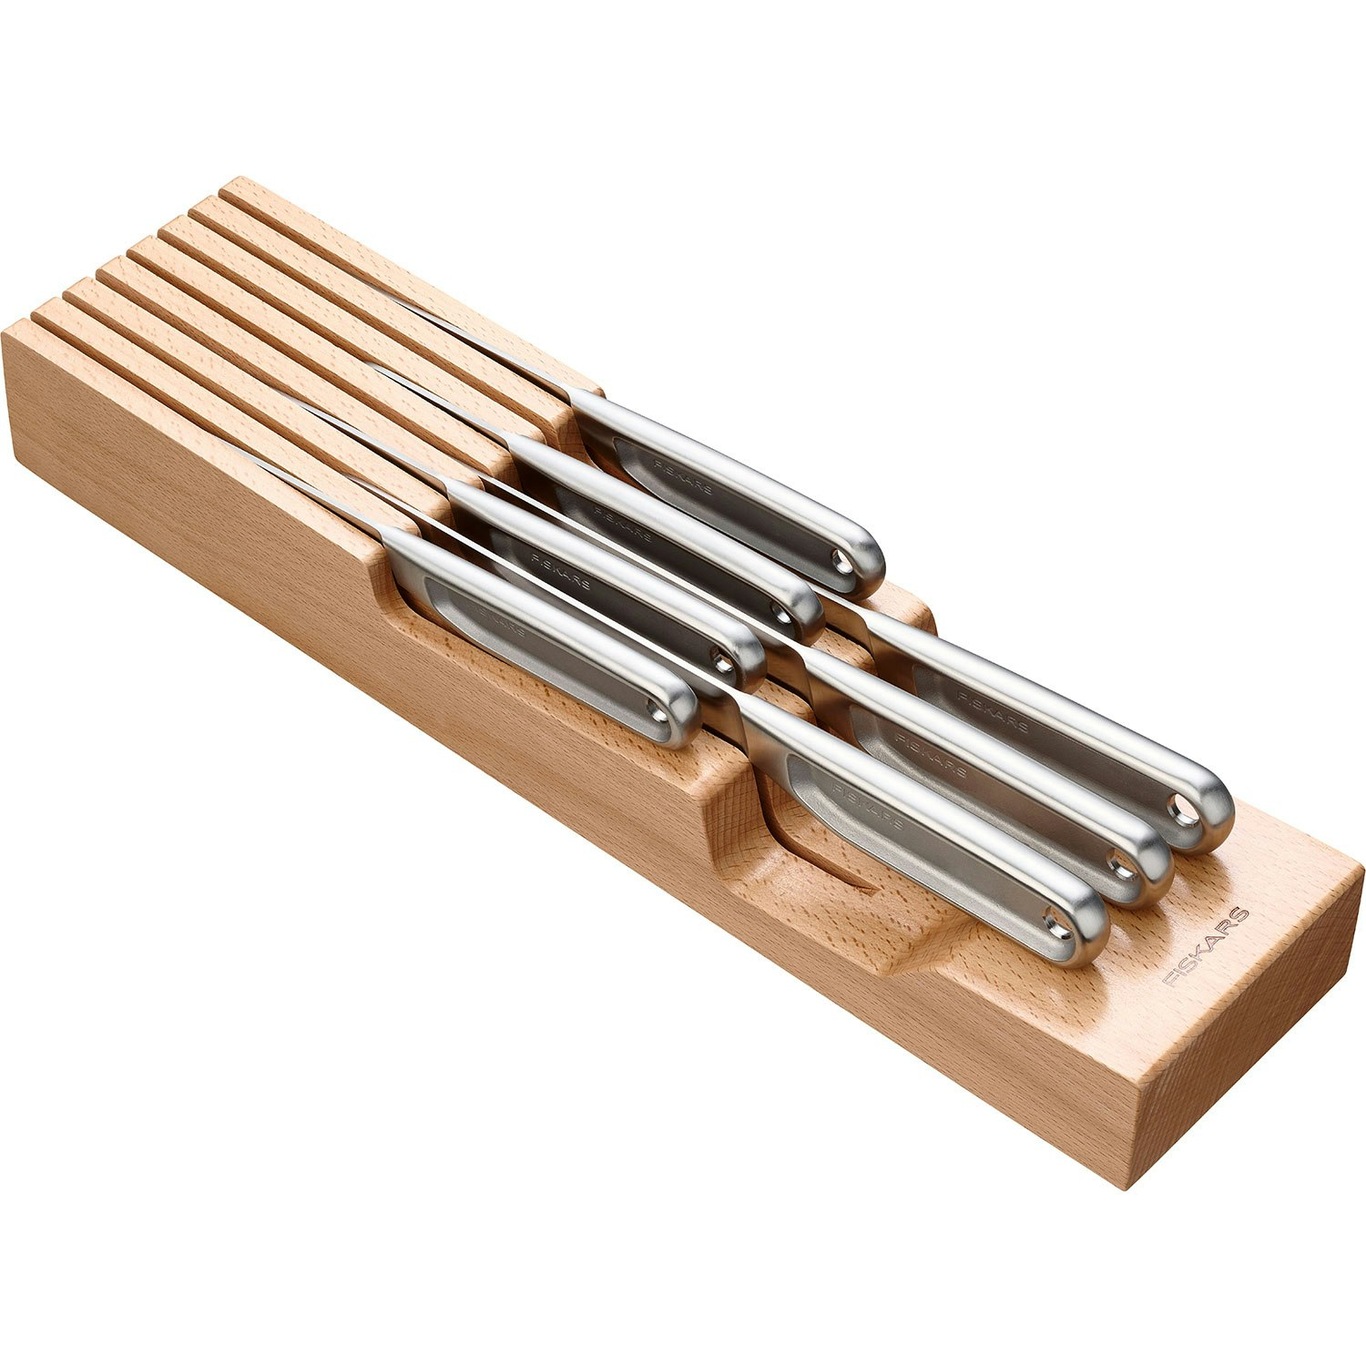 https://royaldesign.com/image/2/fiskars-box-insert-for-knives-wood-1?w=800&quality=80